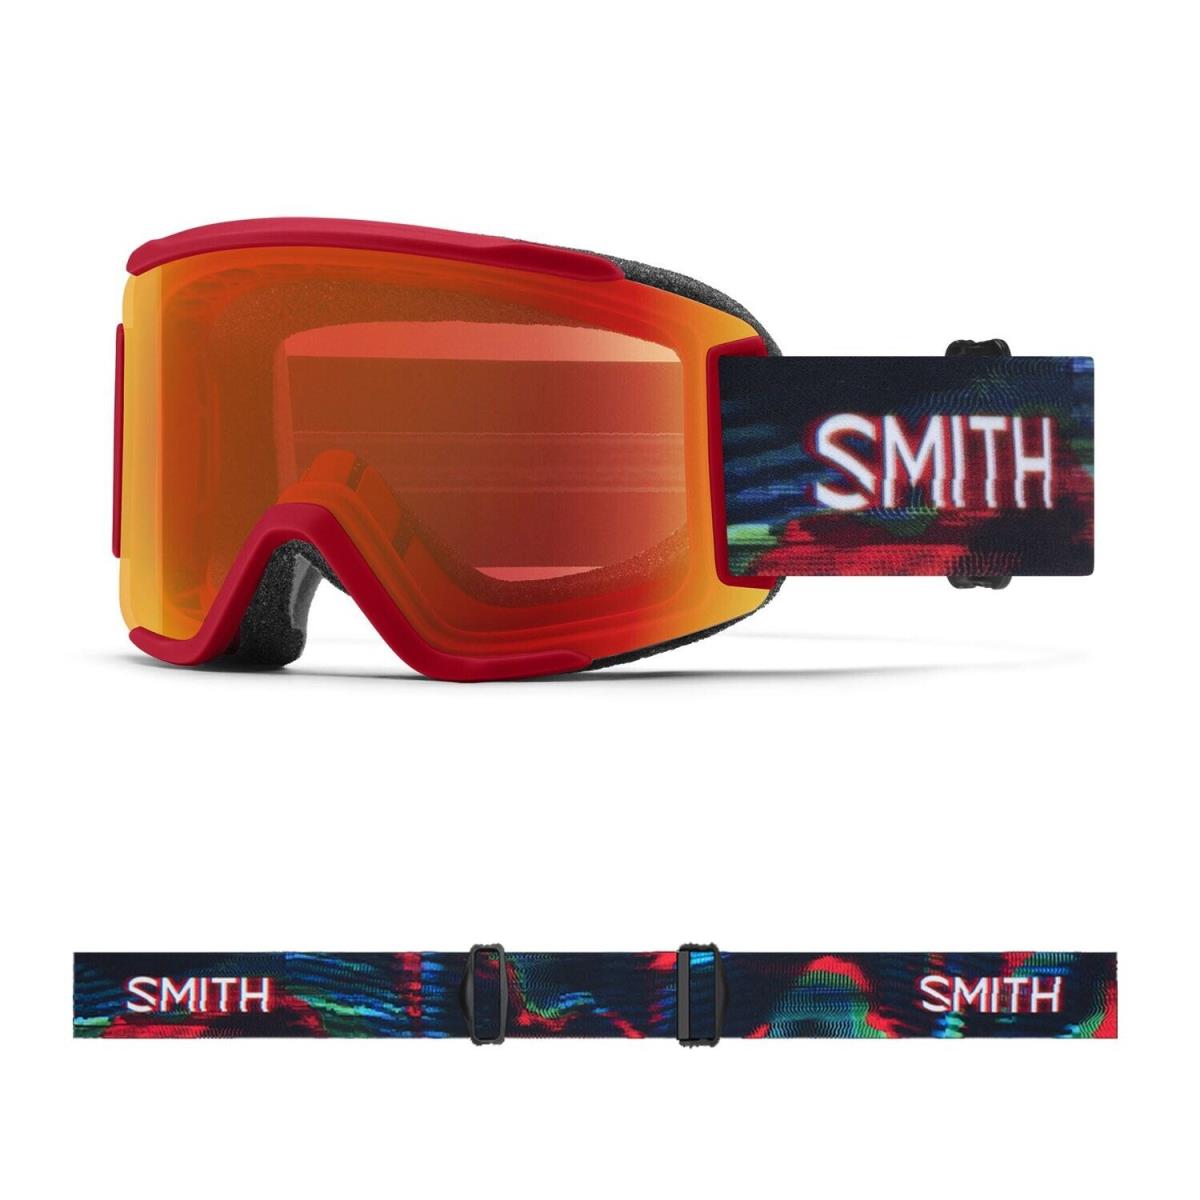 Smith Squad S Snow Goggles Crimson Glitch Hunter Everyday Red Mirror + Bonus